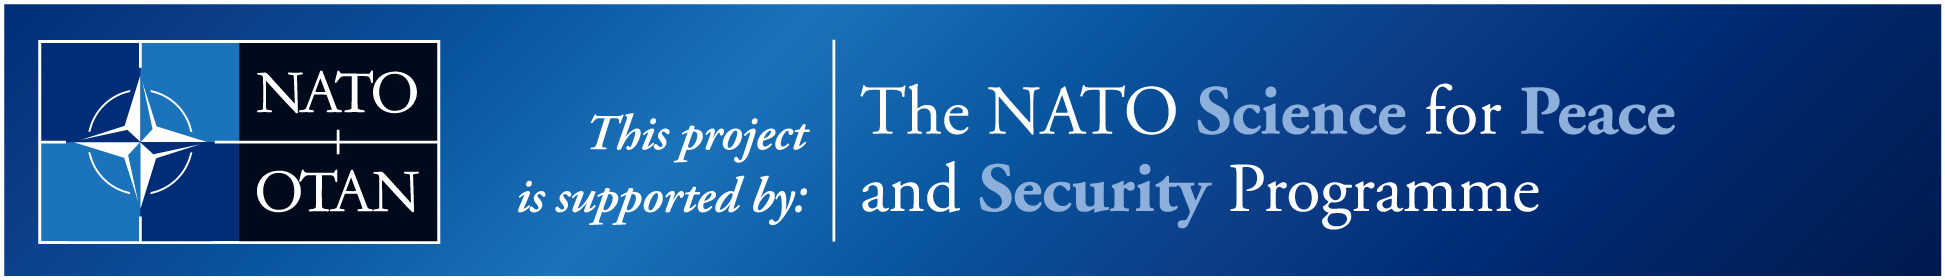 NATO Banner